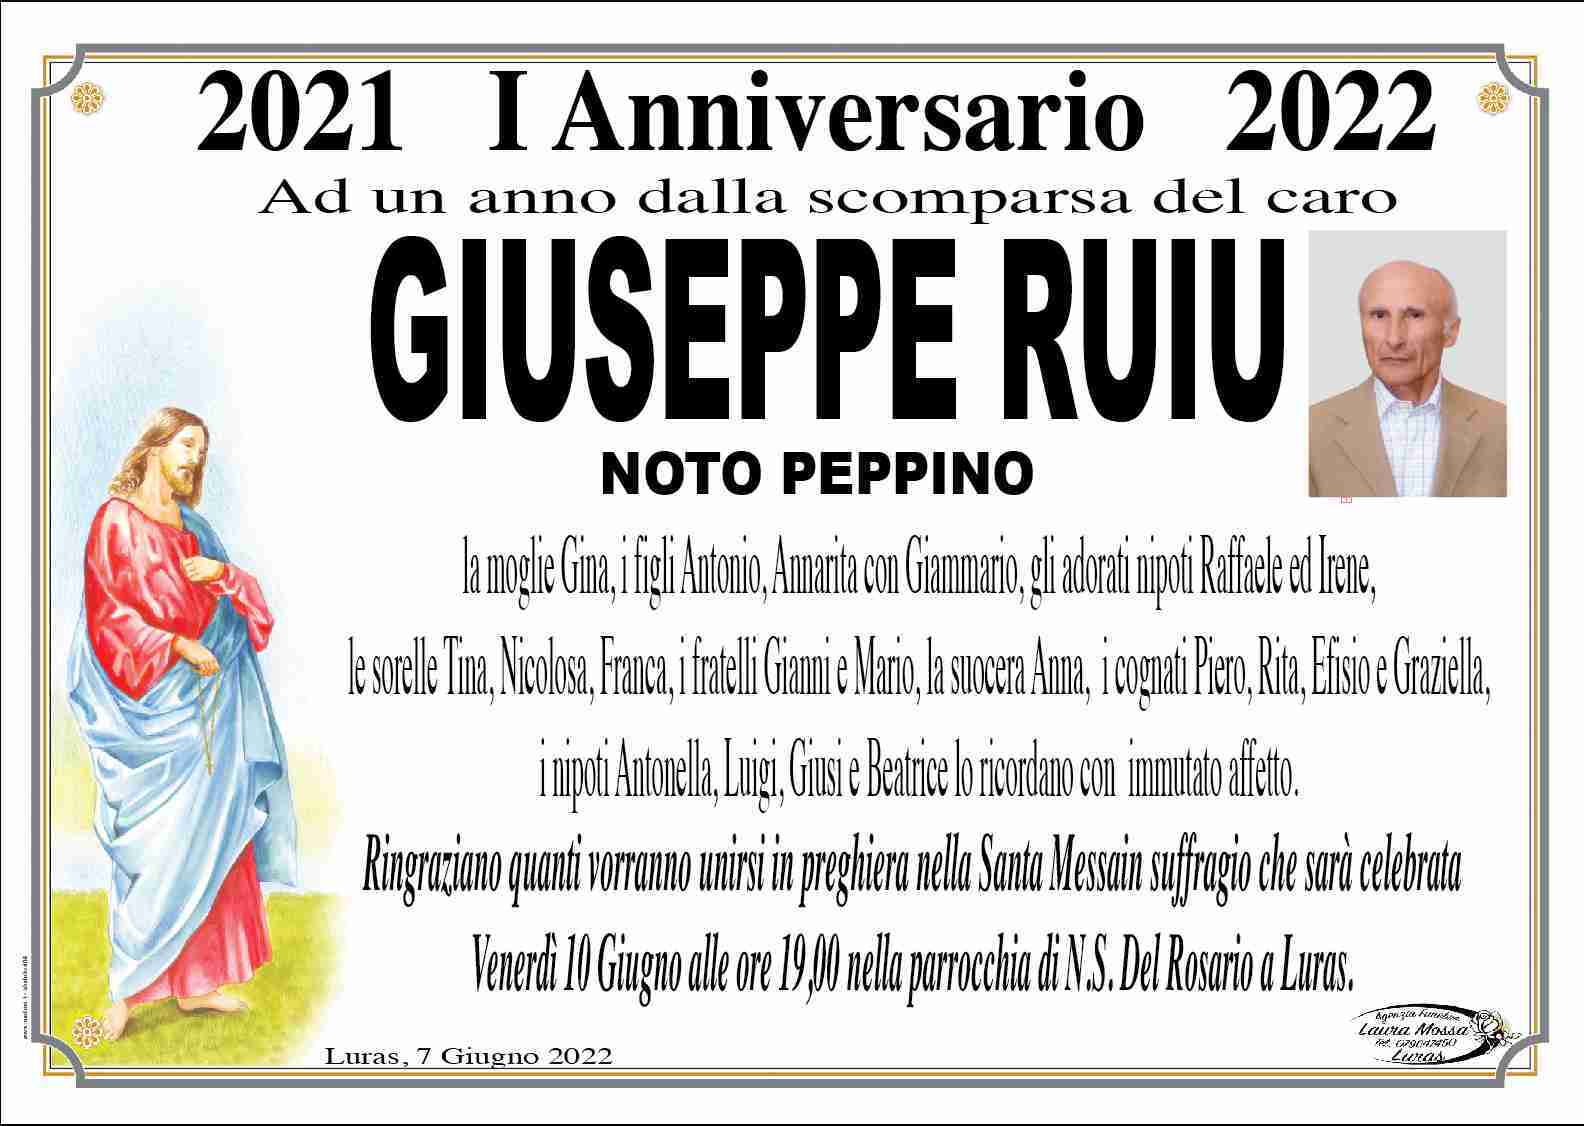 Giuseppe Ruiu